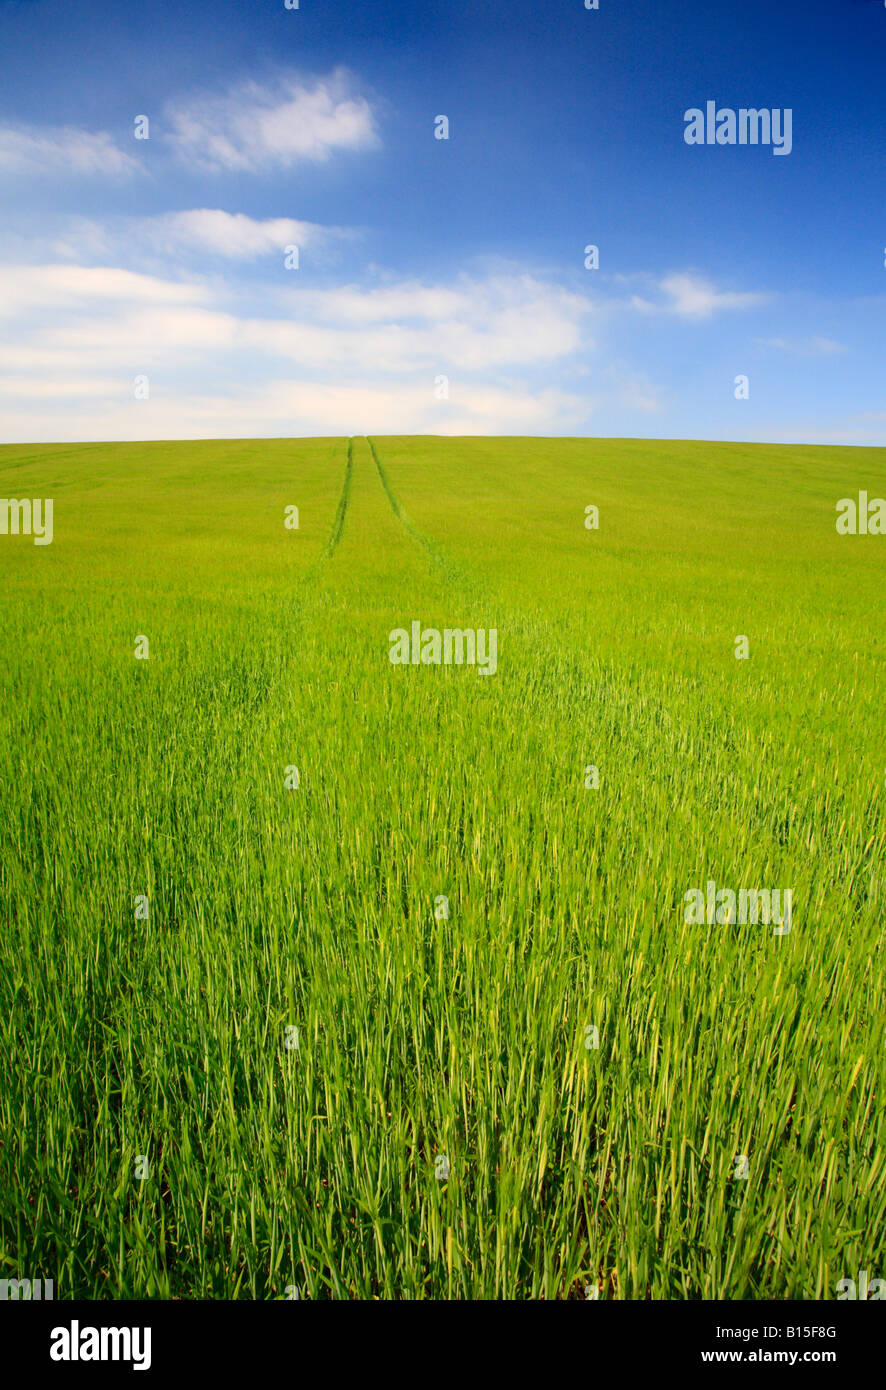 Un champ de nouvelles cultures céréalières vert et un ciel bleu. Banque D'Images